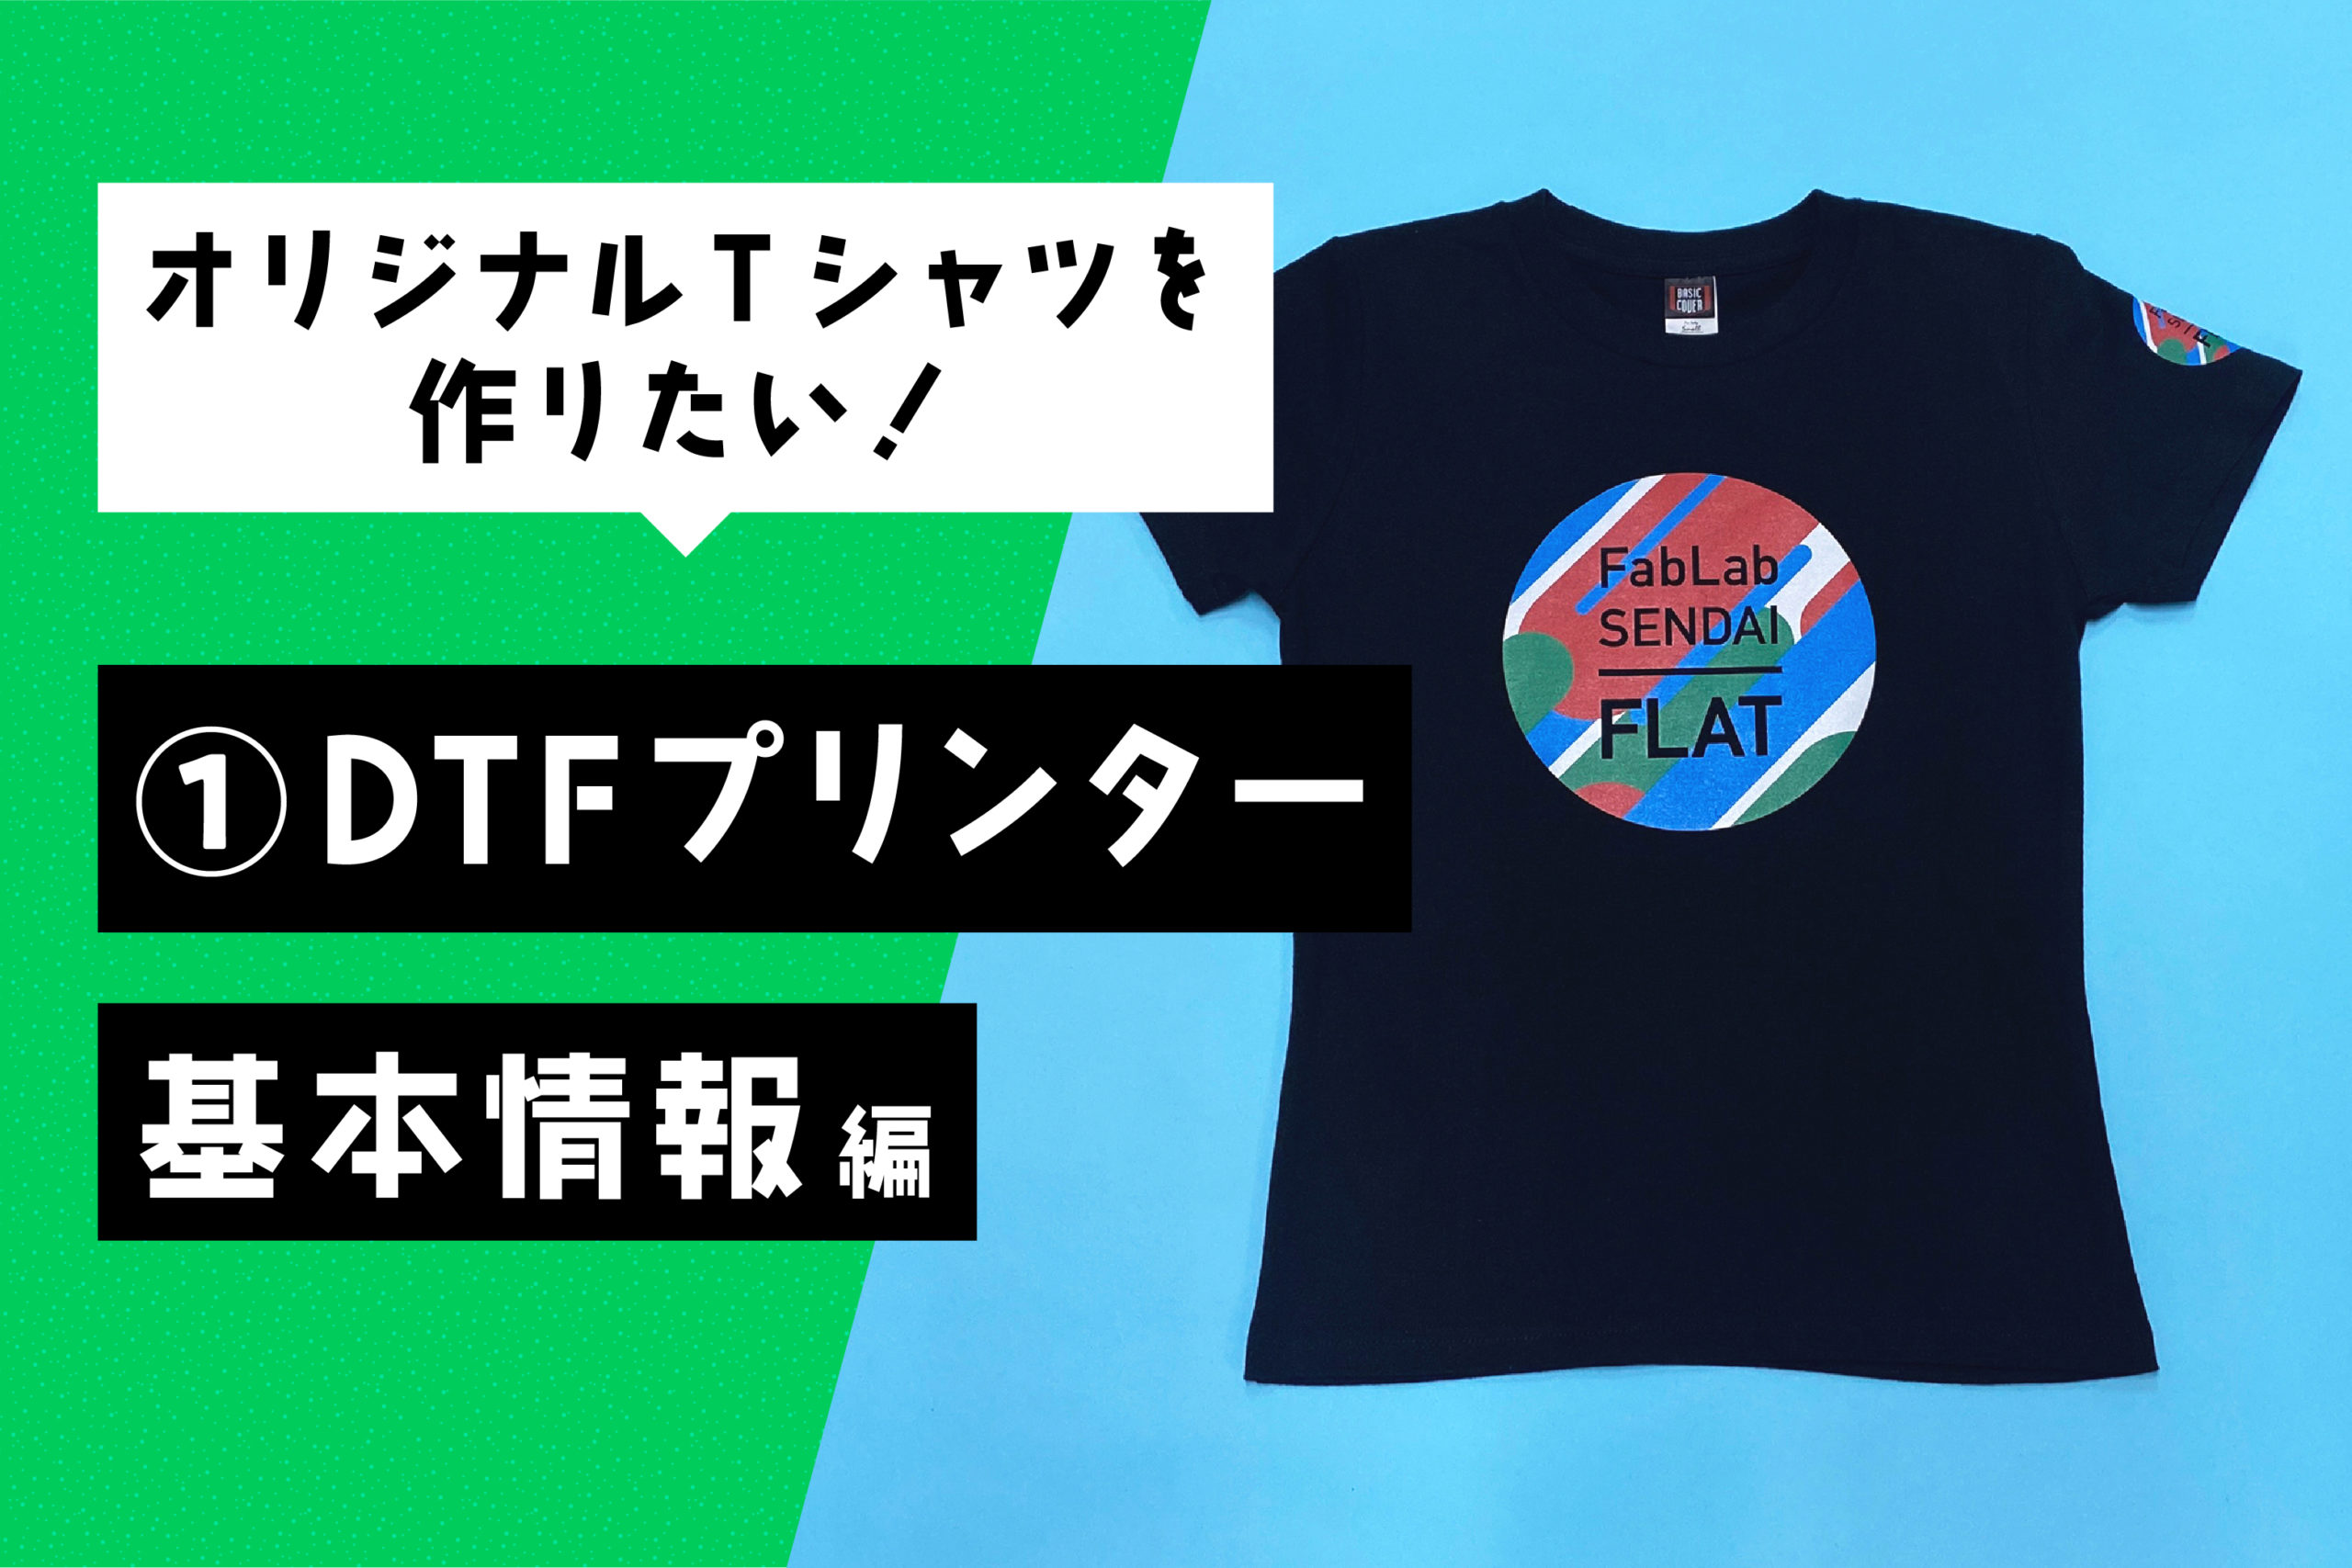 オリジナルTシャツを作りたい！ 〜①DTFプリンター 基本情報編〜